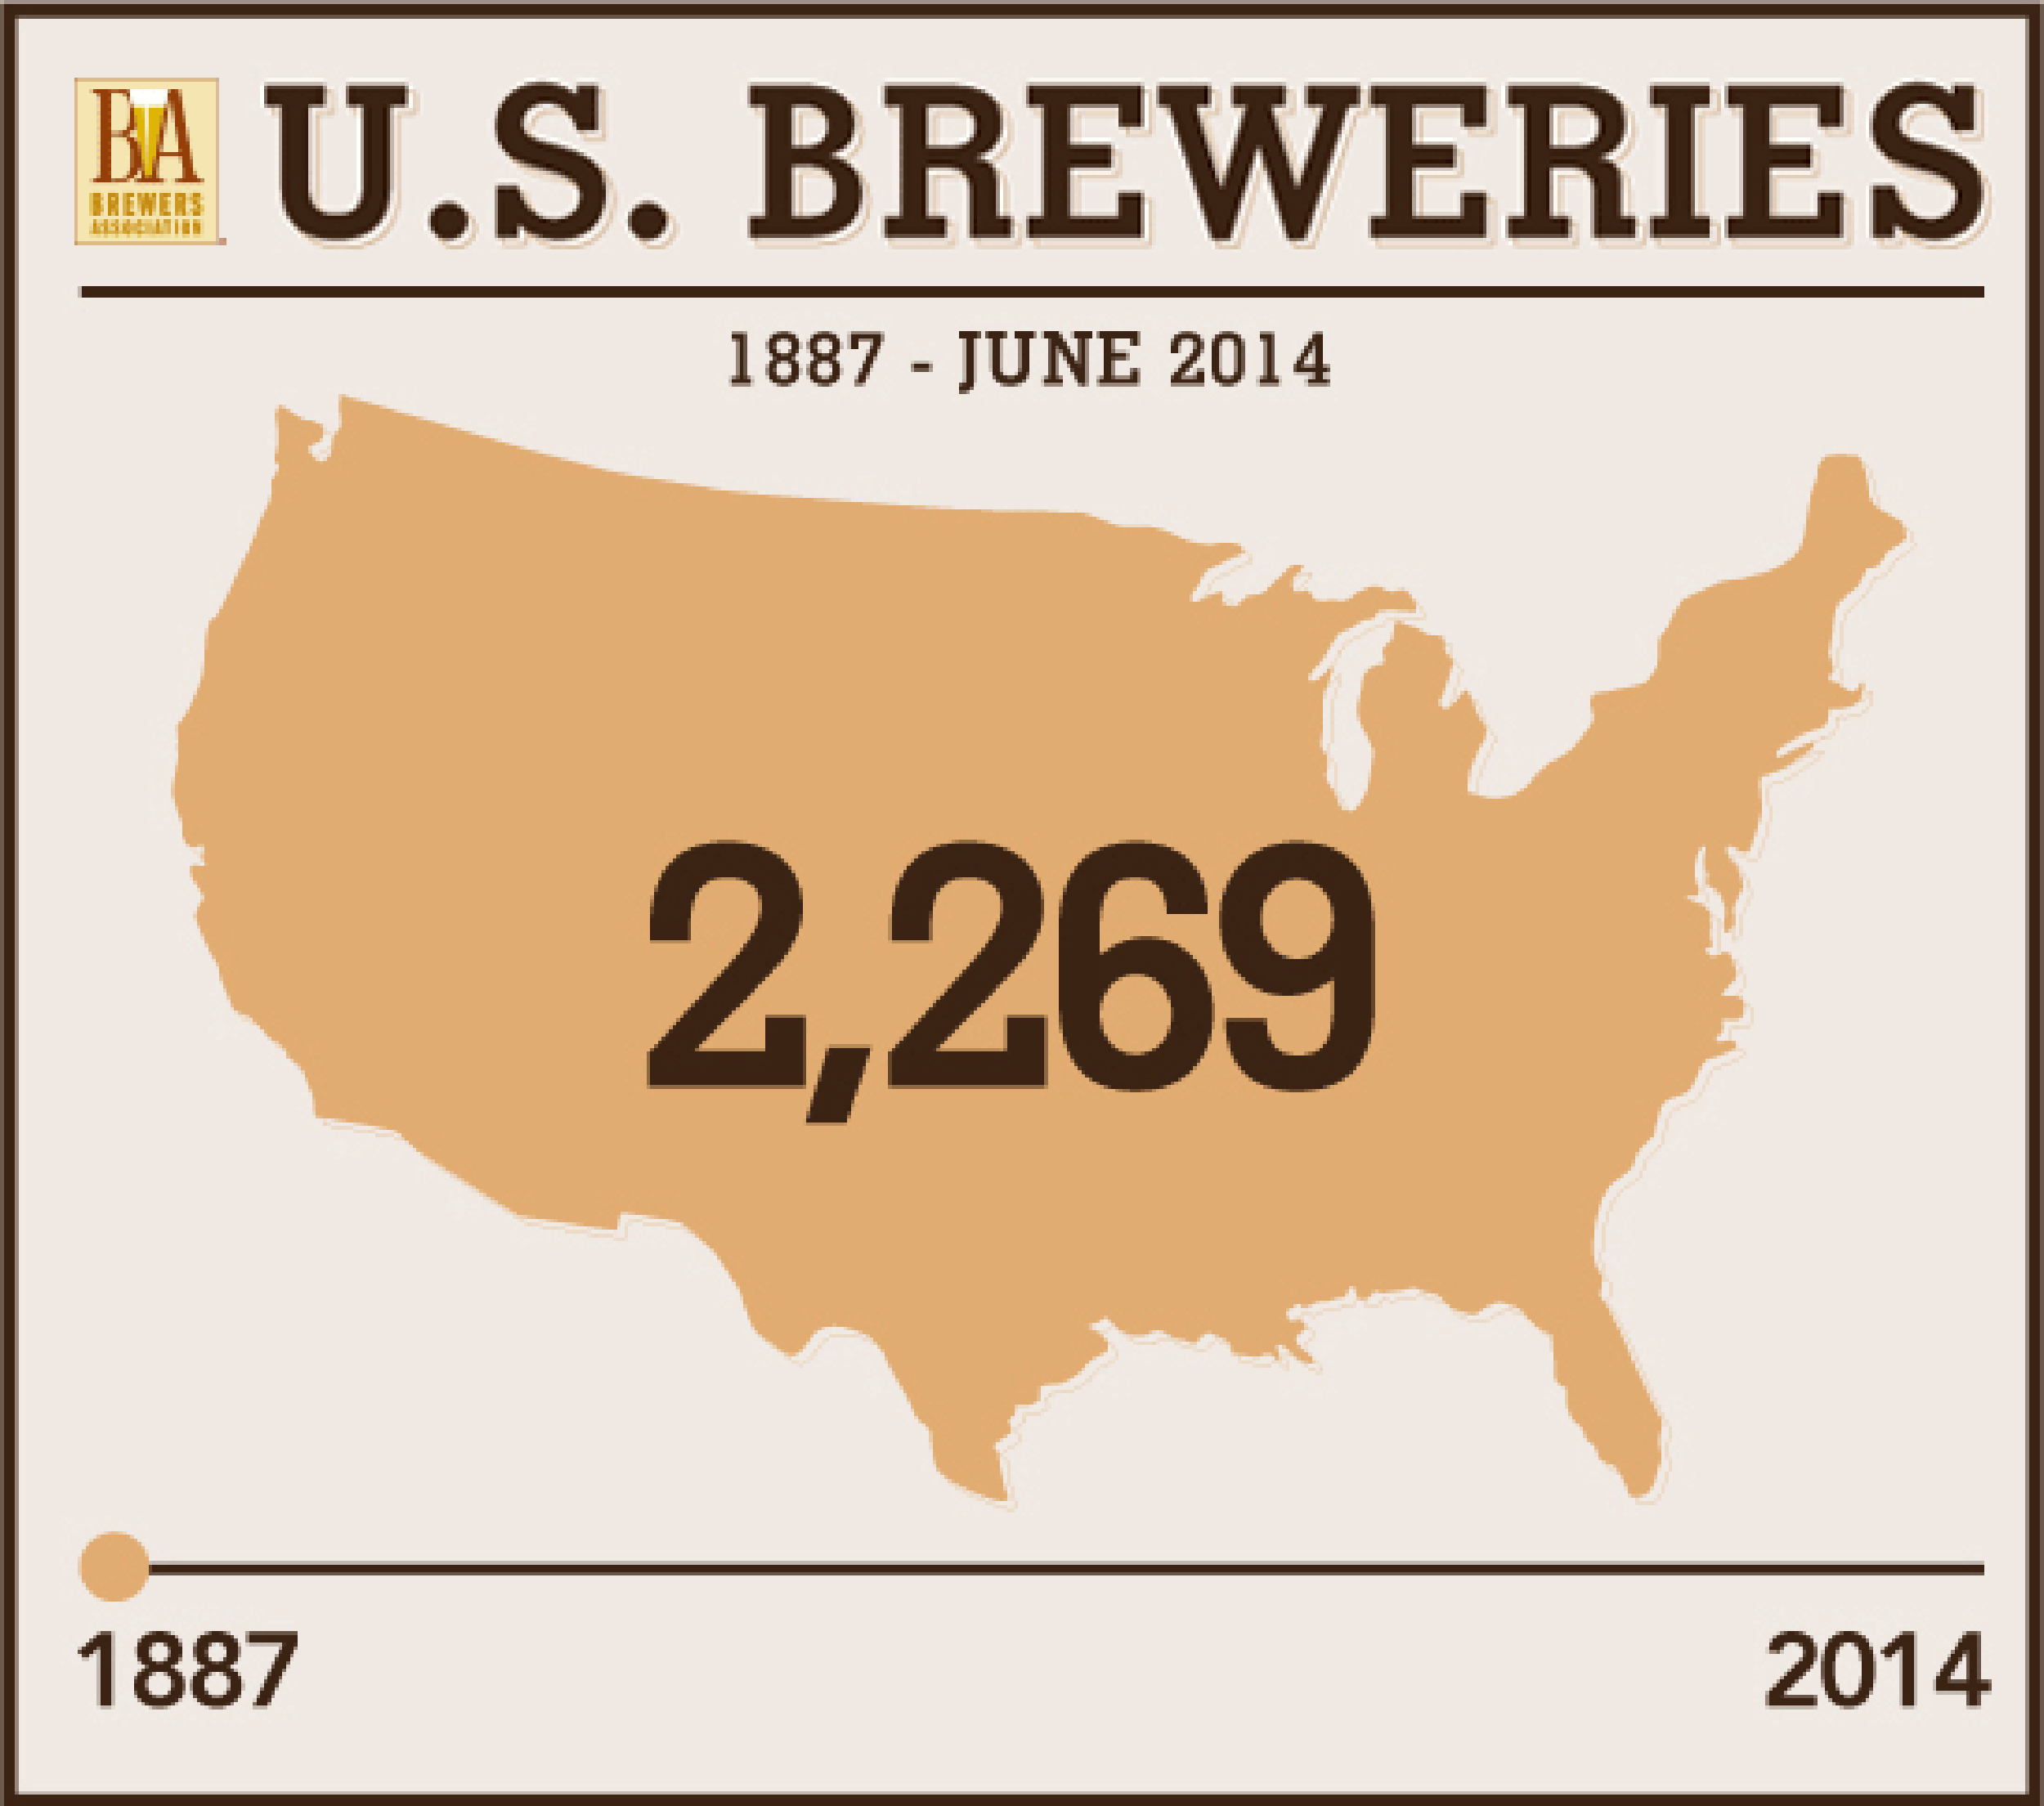 U.S. Breweries